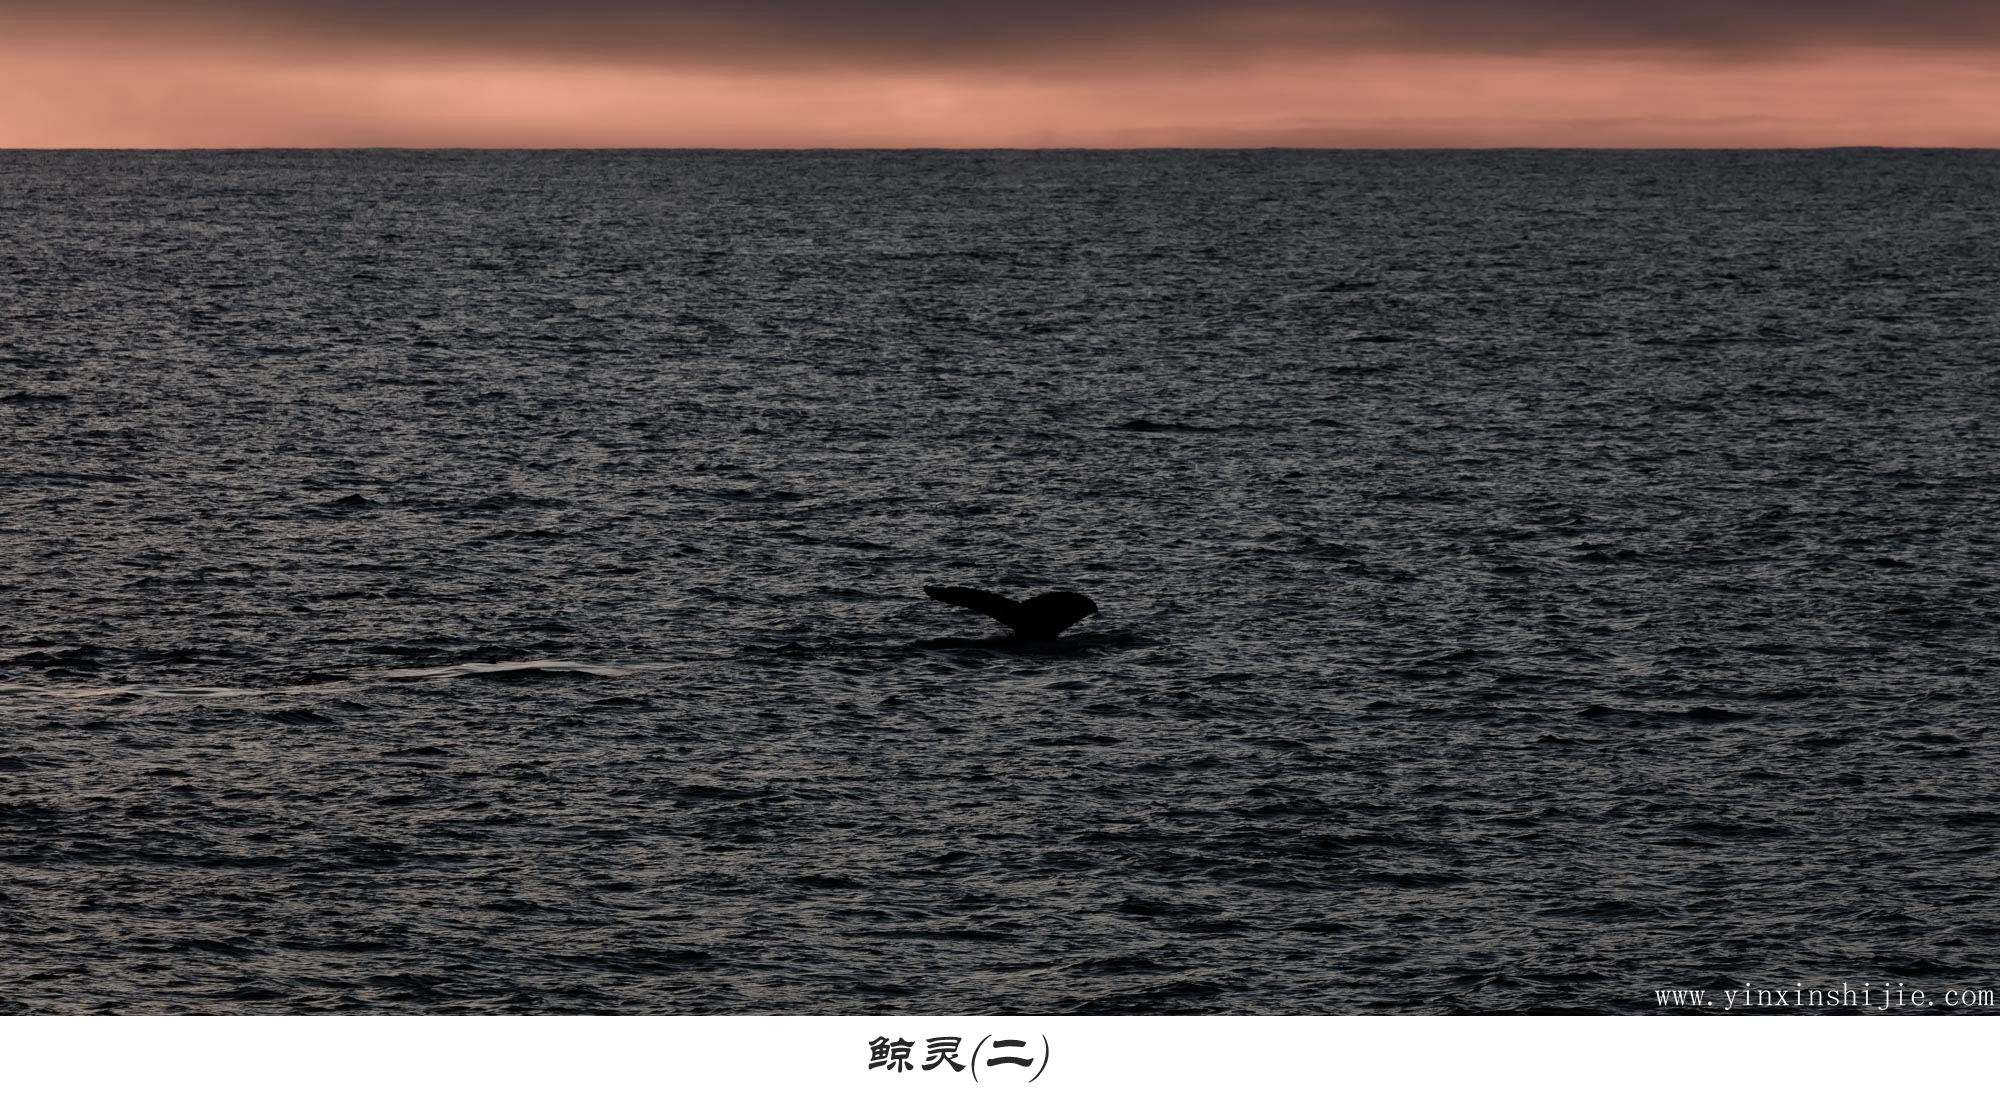 鲸灵(二)——2017南极